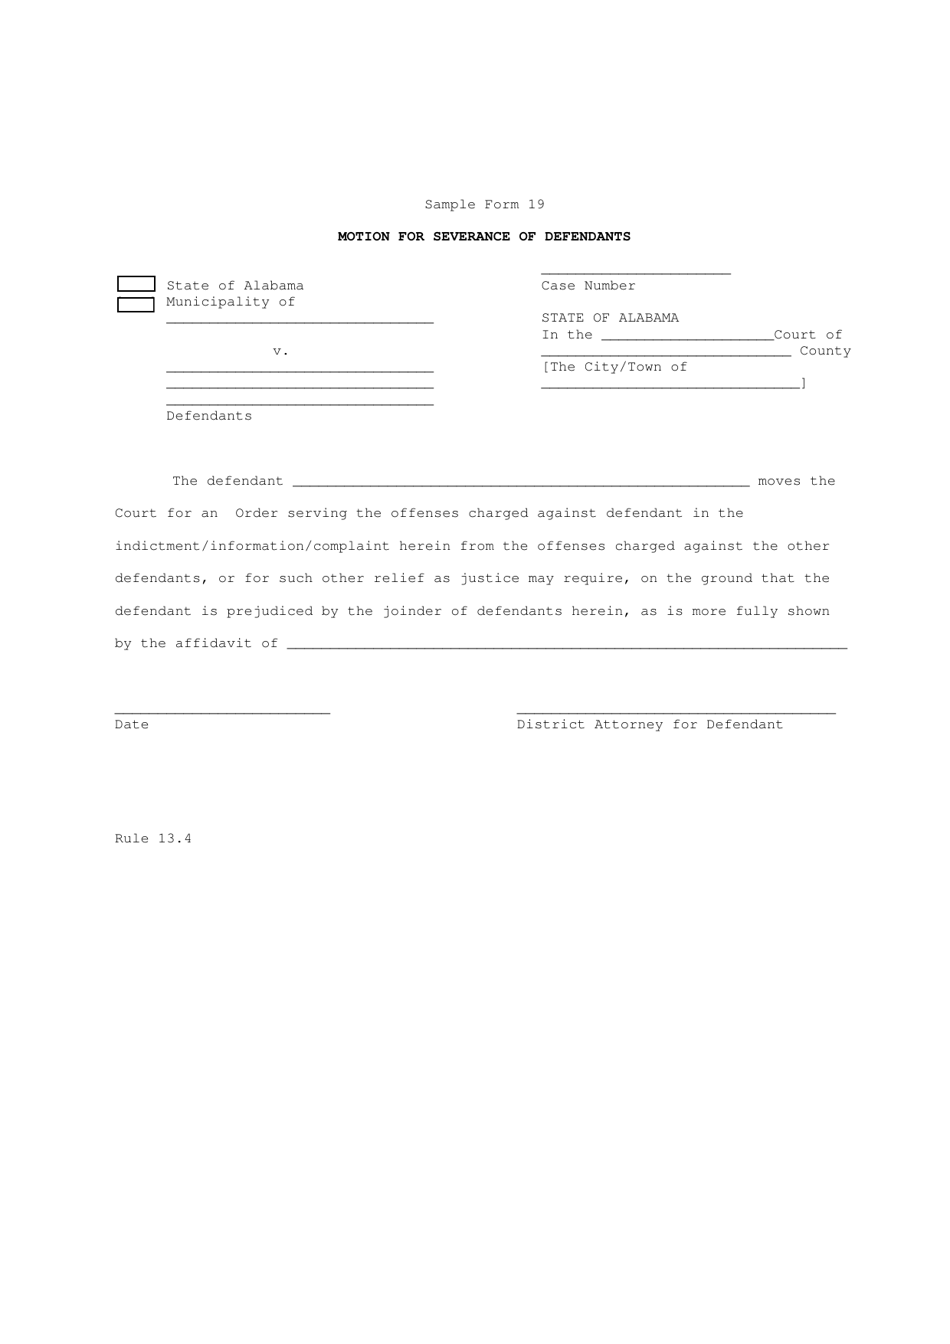 Sample Form 19 Motion for Severance of Defendants - Alabama, Page 1